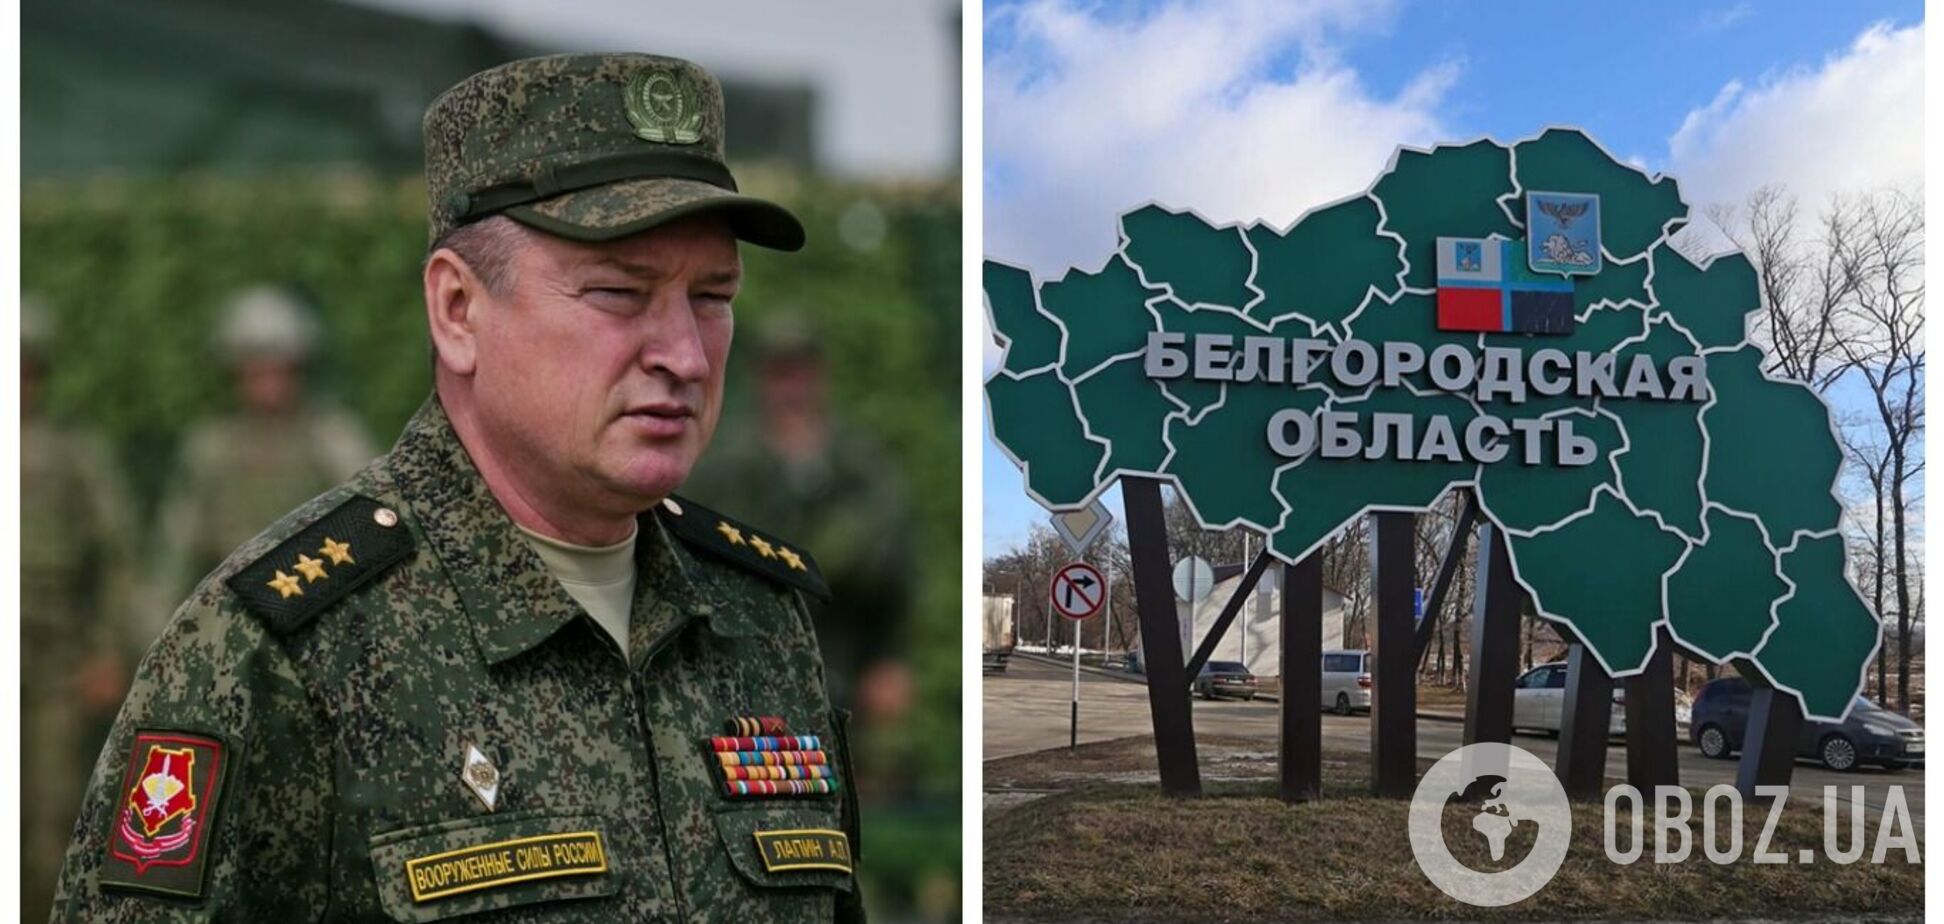 Операція добровольців у Бєлгородській області збурила росіян: в ISW пояснили, що відбулося і чому поява Лапіна не випадкова. Карта